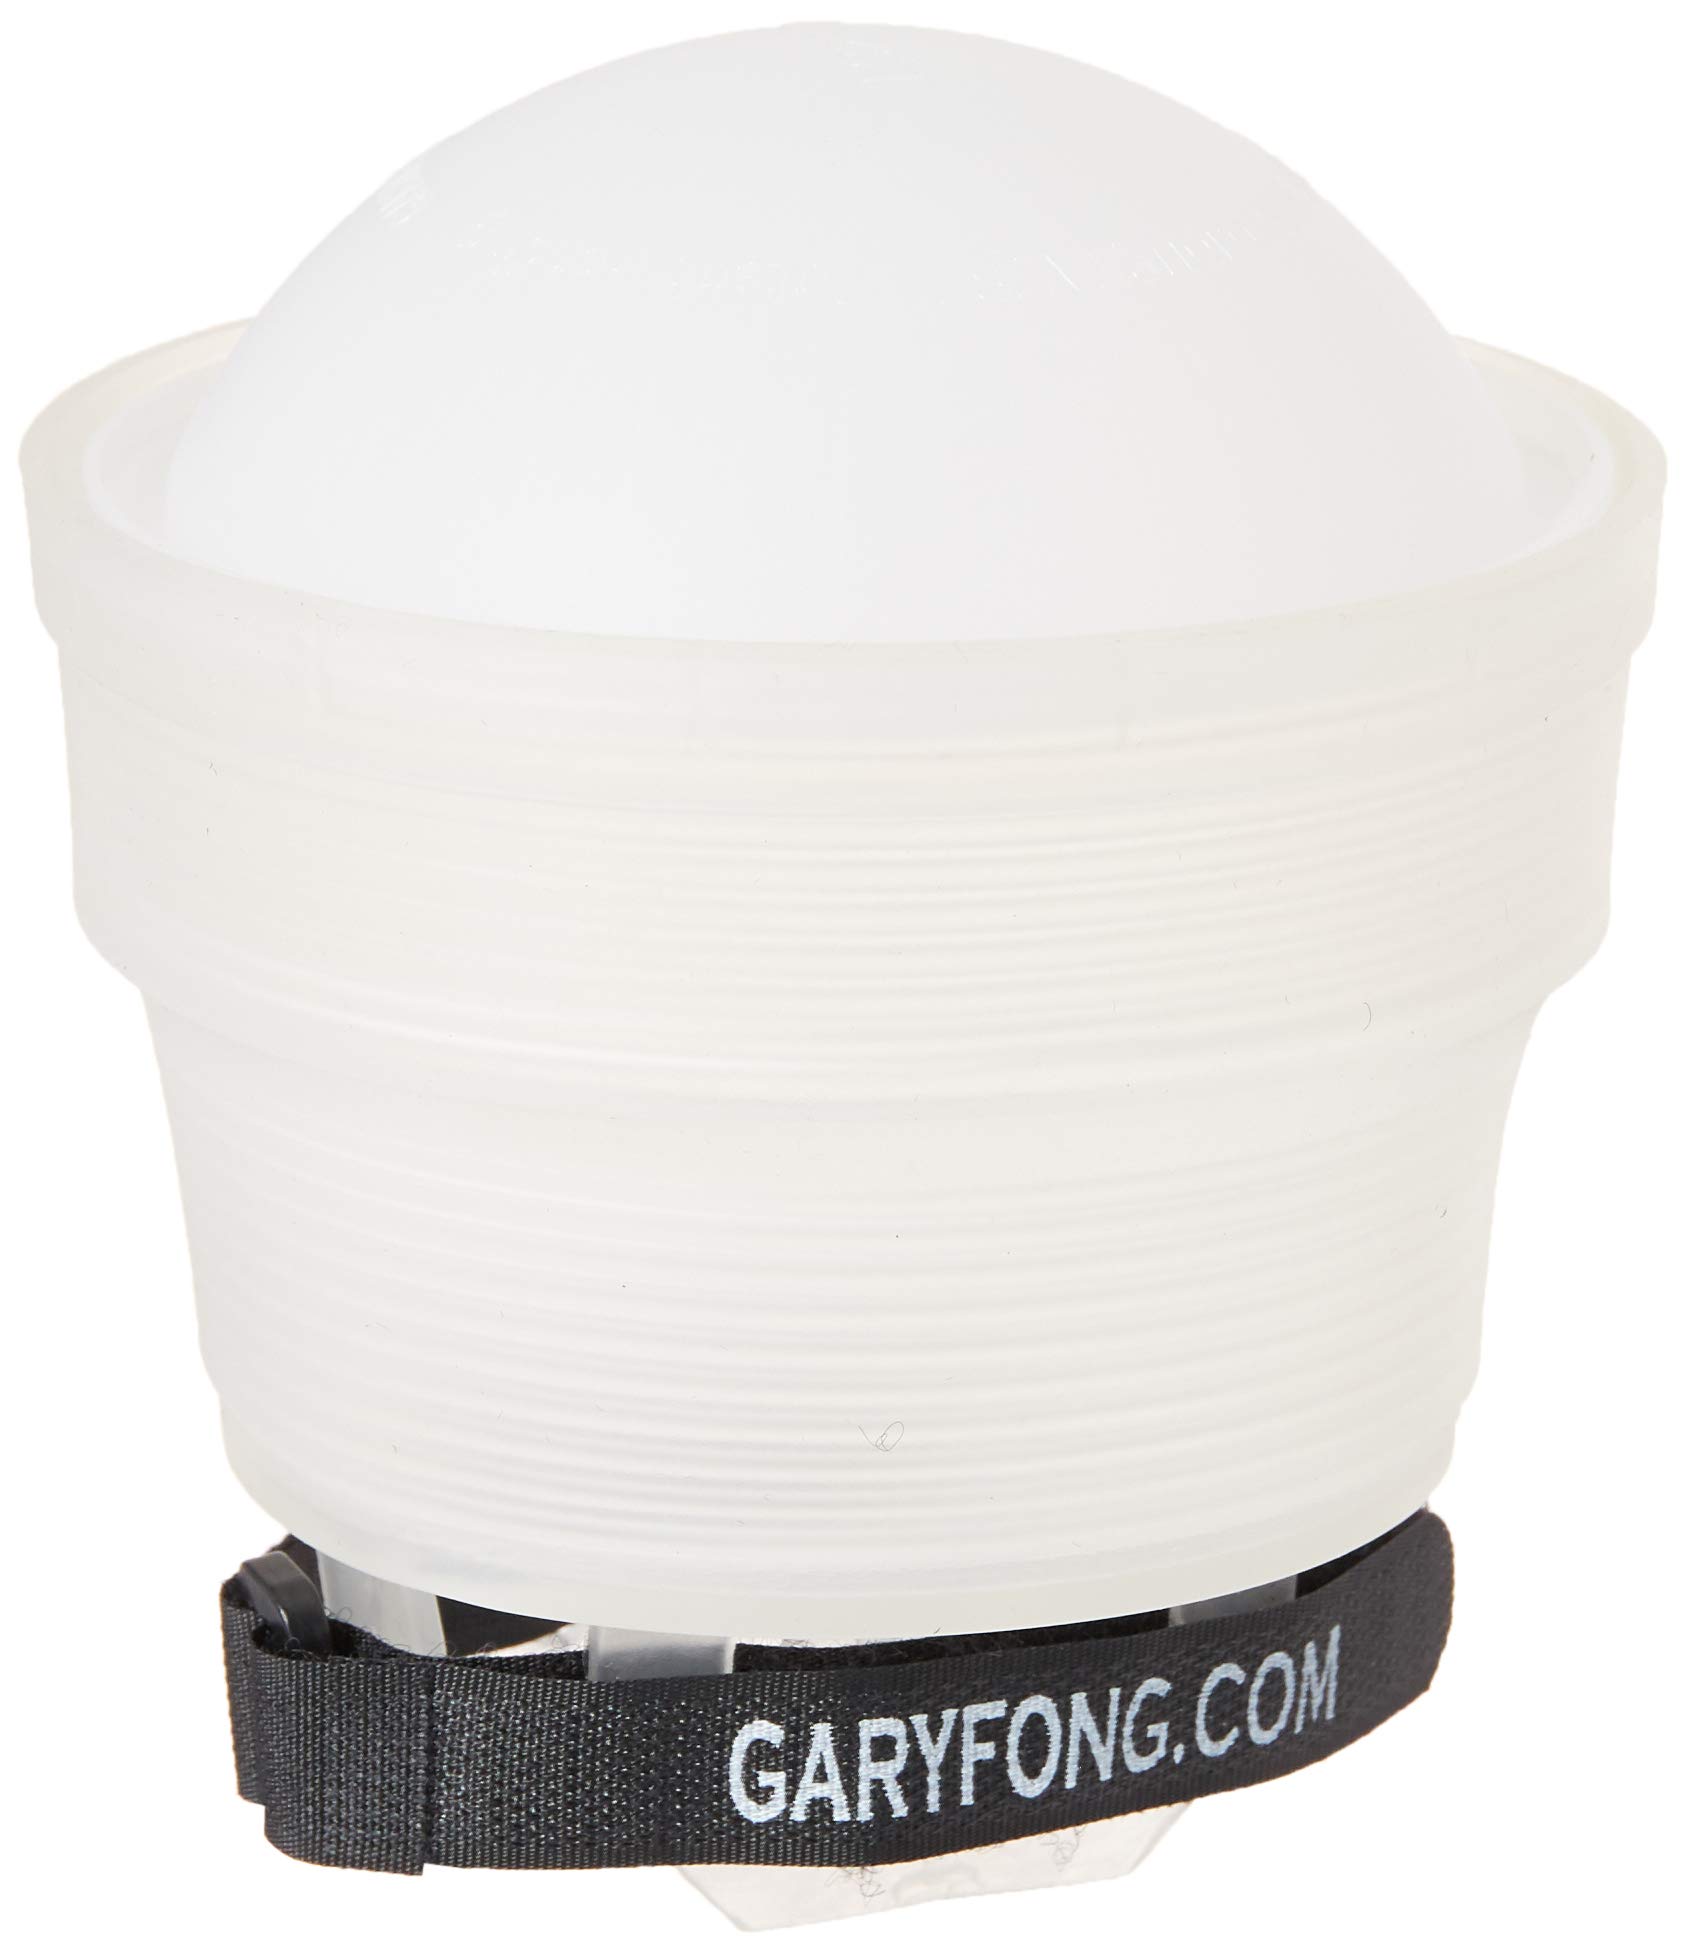 Gary Fong Lightsphere Collapsible Gen5